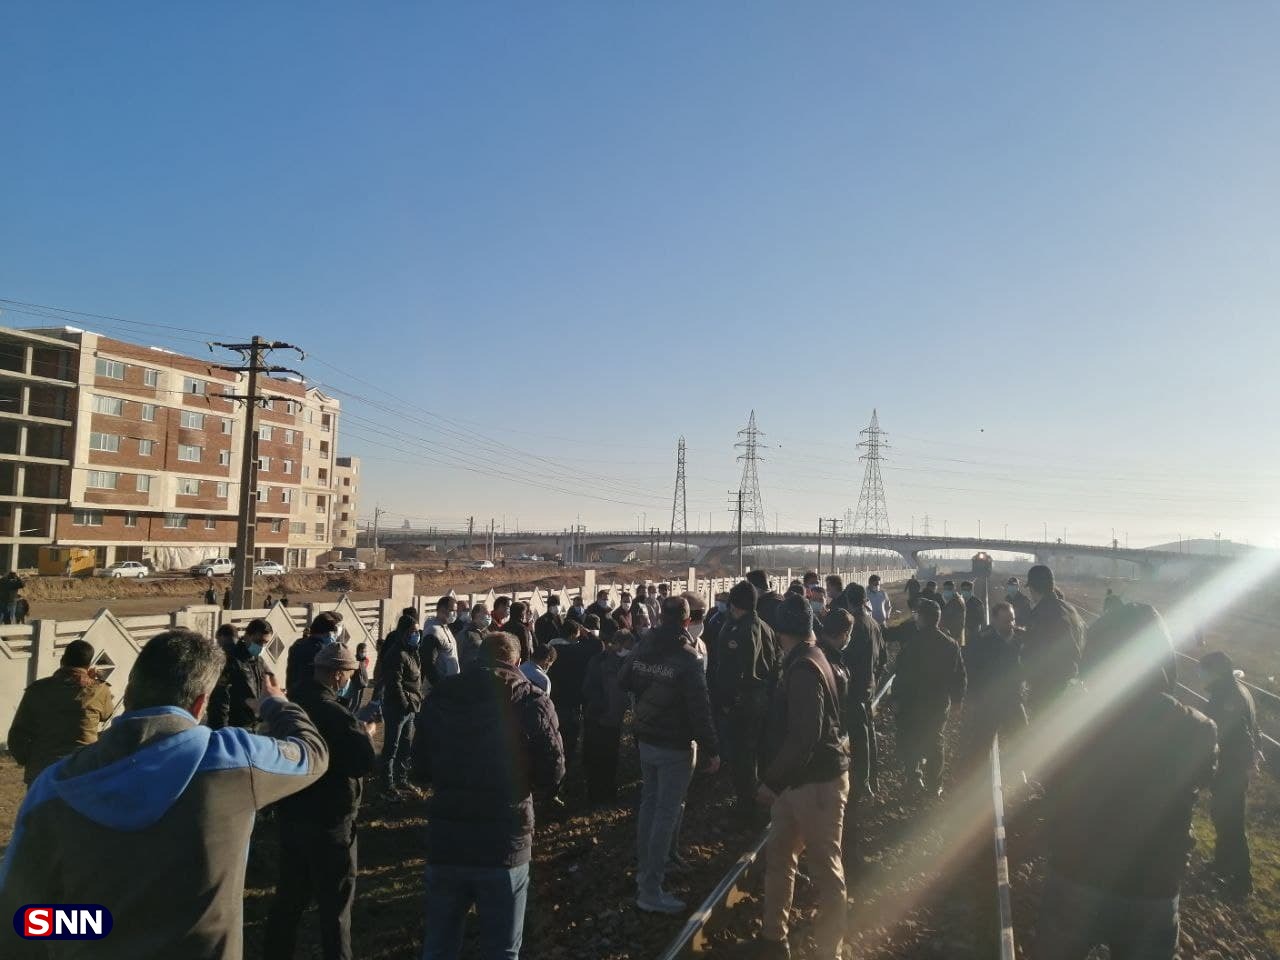 //// کارگران هپکو صبح امروز ریل راه آهن اراک را بستند / مطالبه اصلی کارگران بازگشت تولید به کارخانه